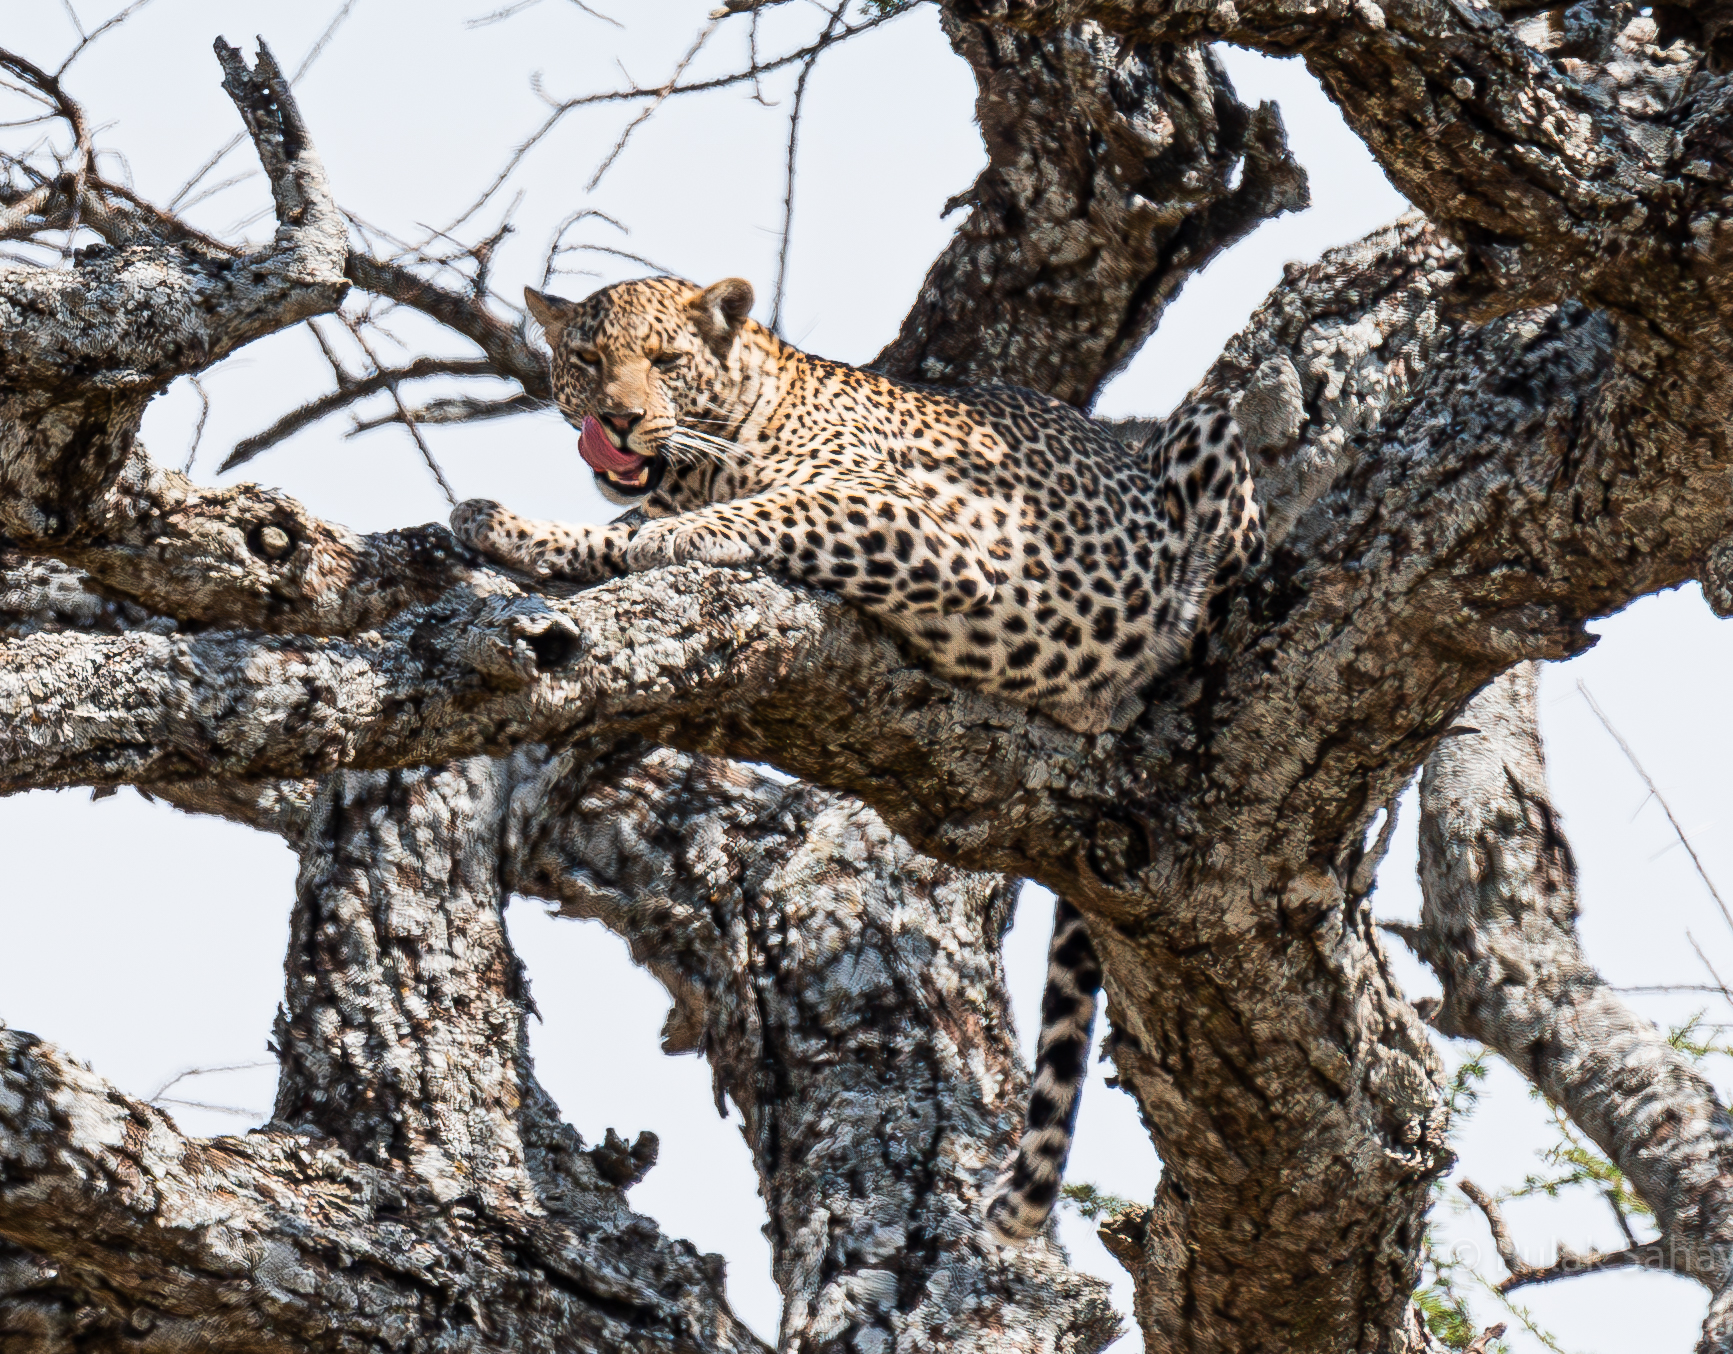 Leopard slurping on tree